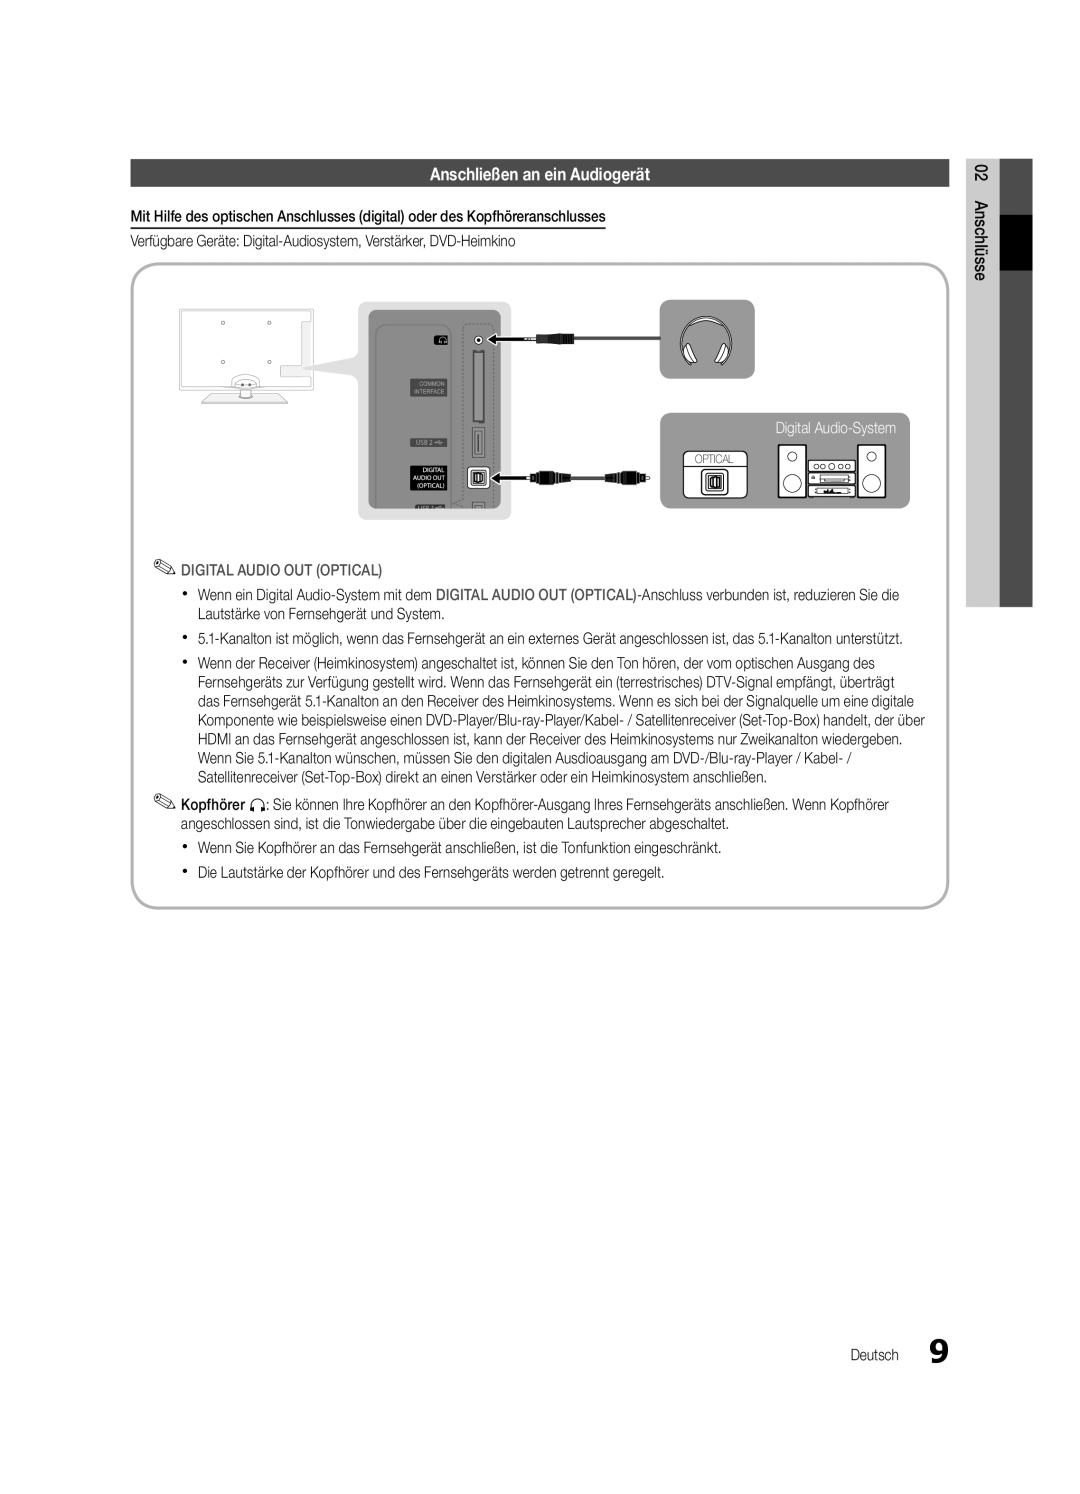 Samsung UE32C5700QSXZG manual Anschließen an ein Audiogerät, Digital Audio-System, Digital Audio Out Optical, Anschlüsse 